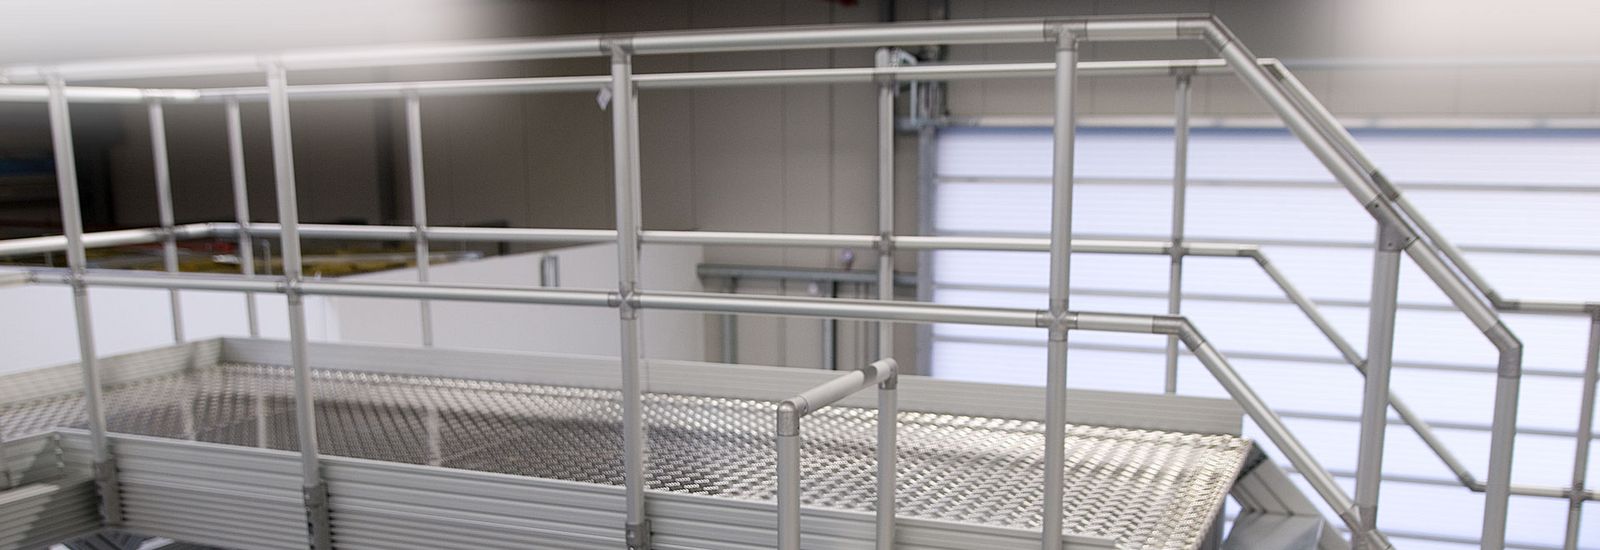 Uniones para tubos para sistemas de escaleras y barandillas